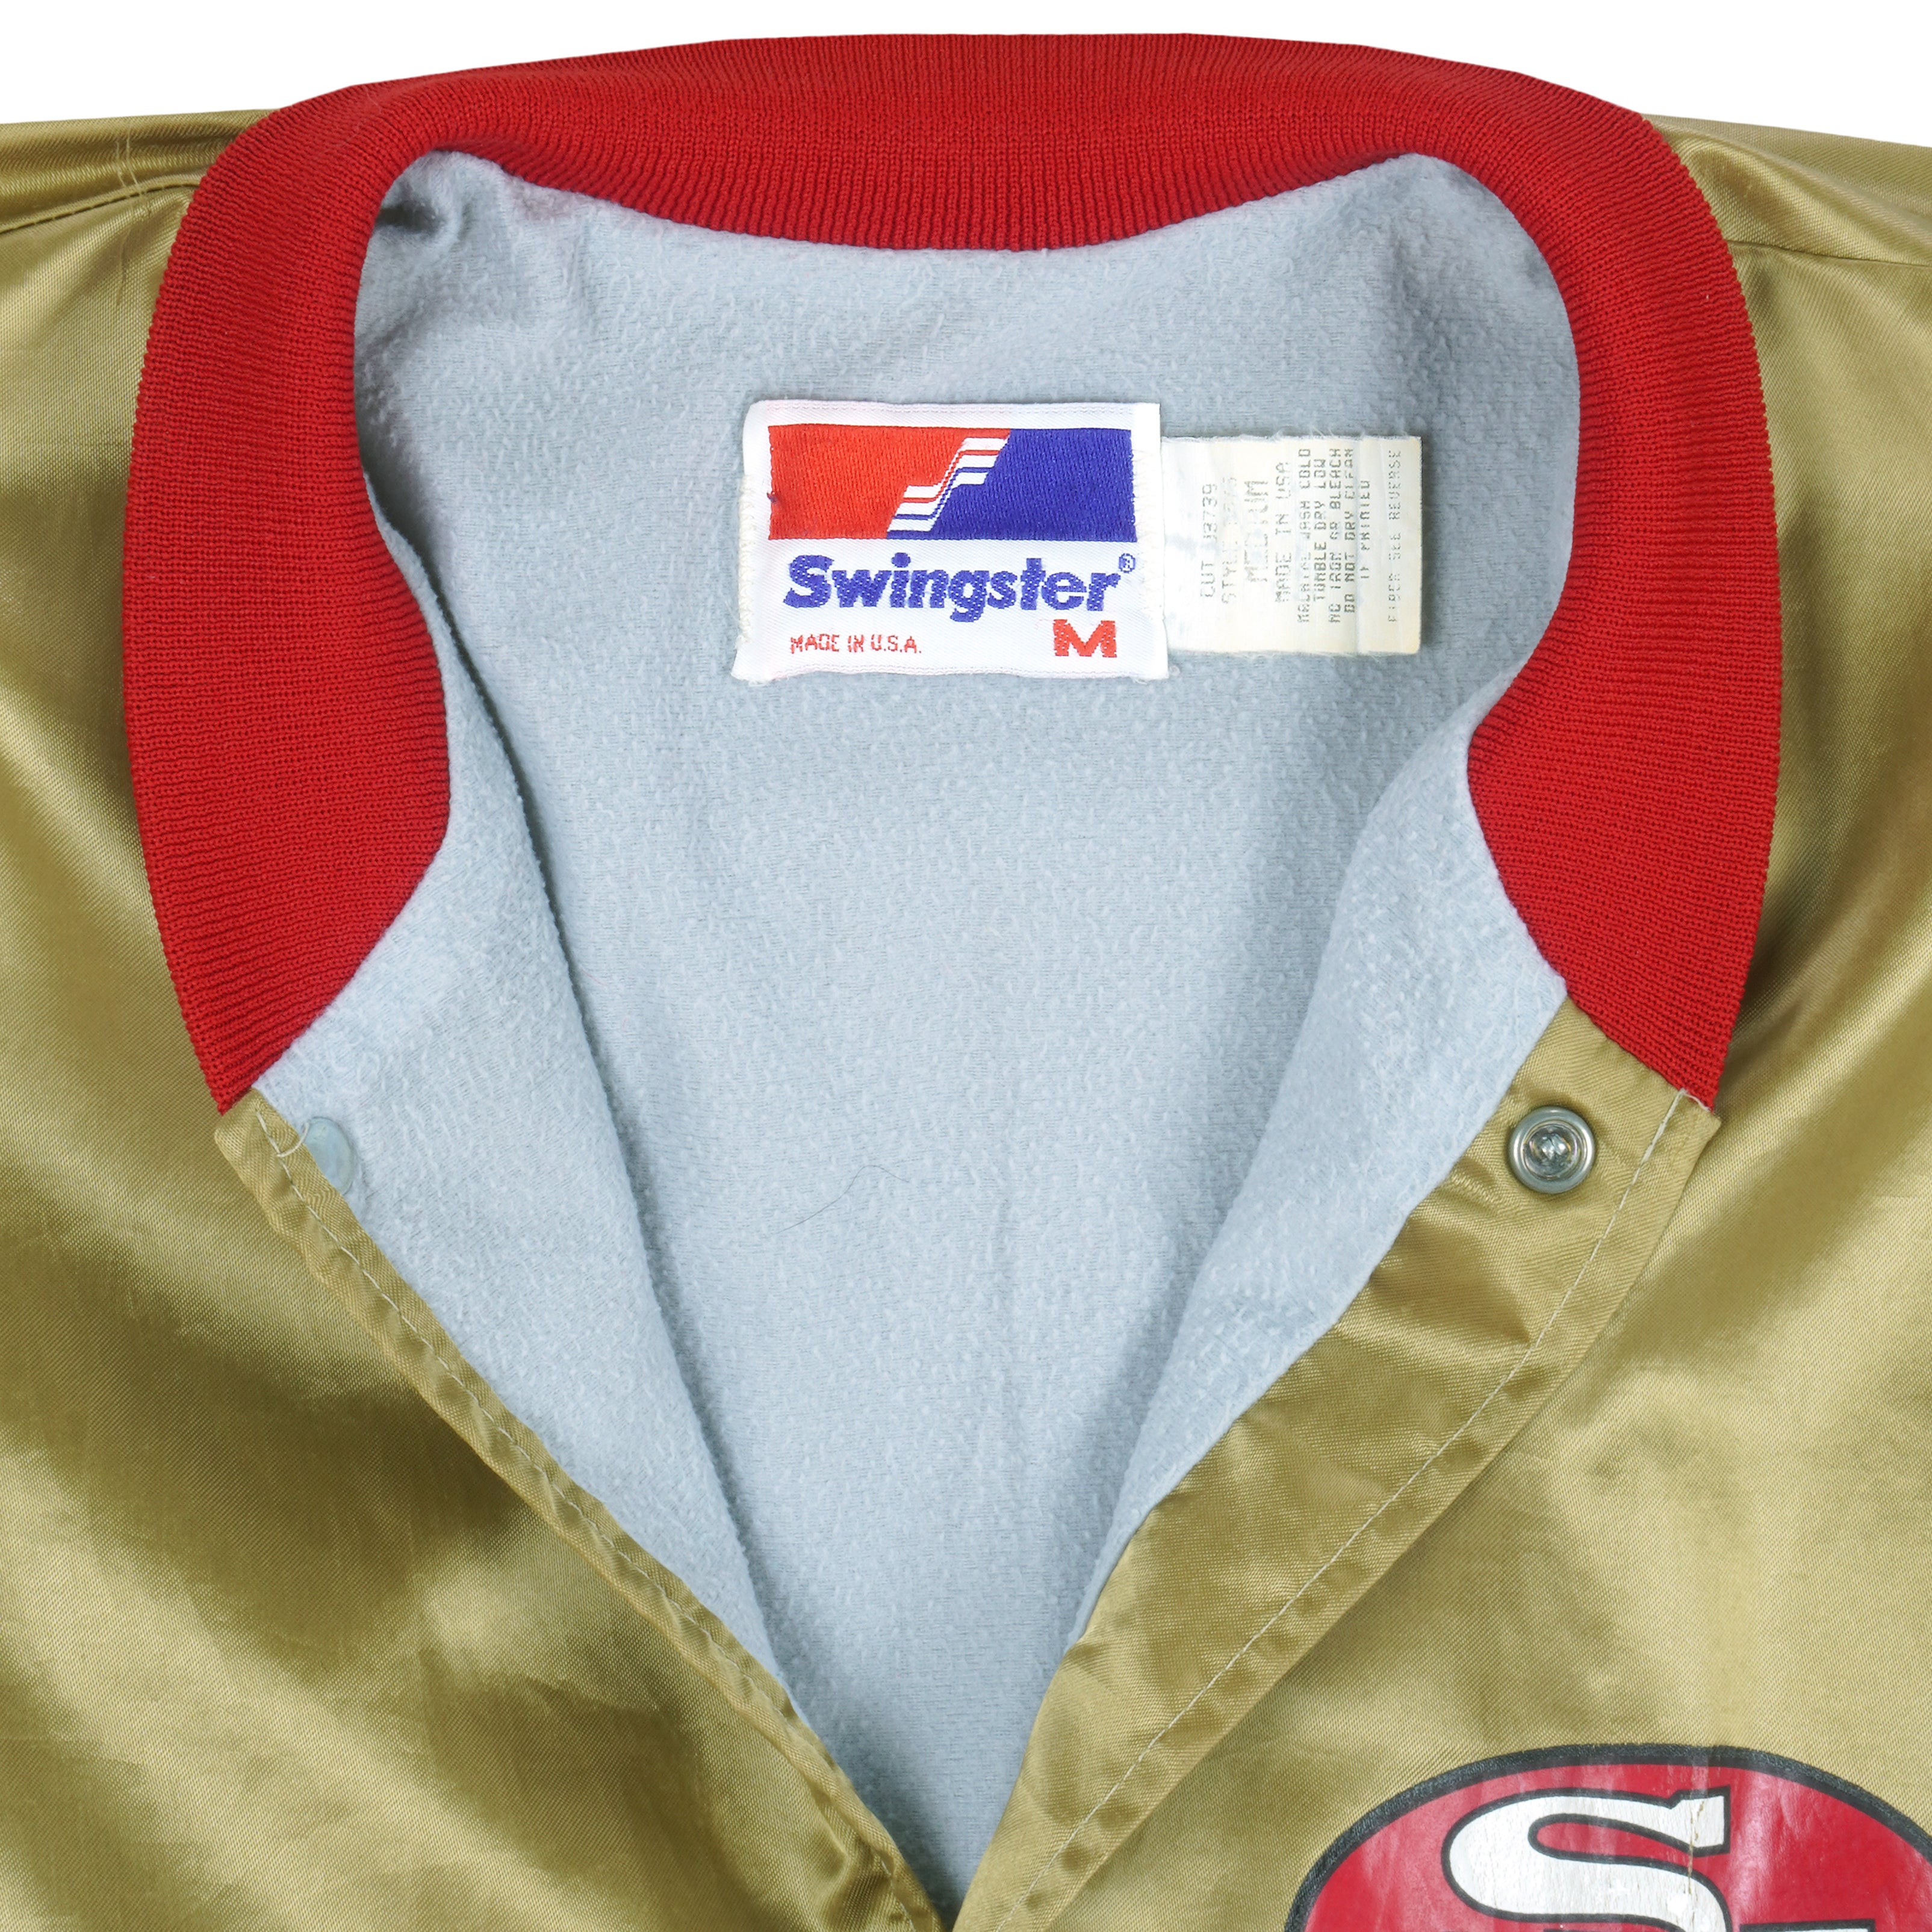 1990 49ers starter jacket